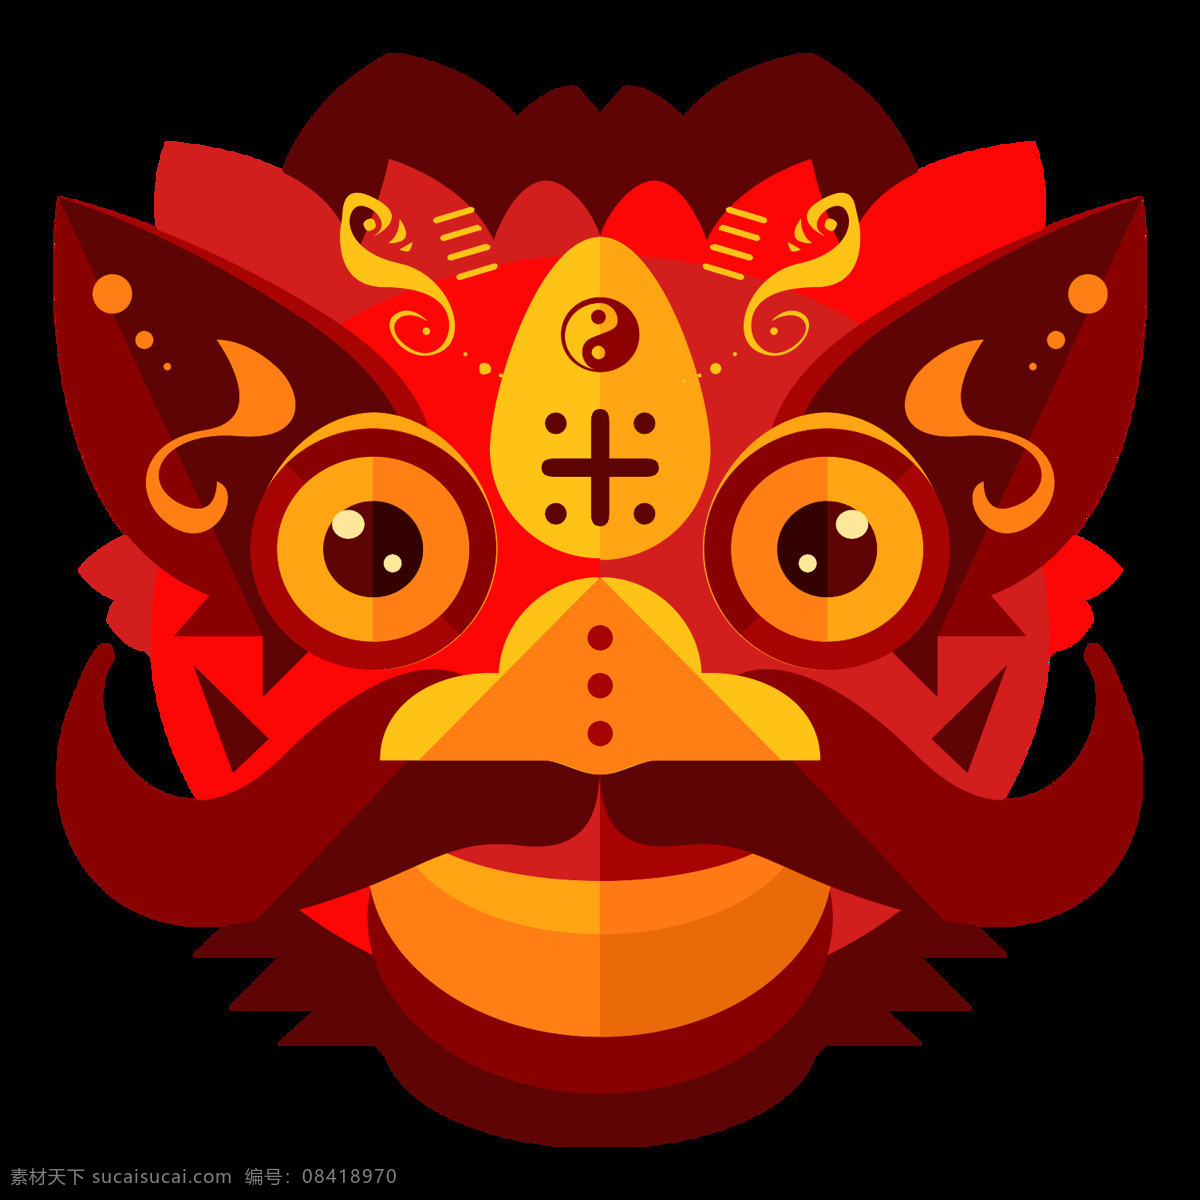 扁平 中国 风 春节 图标 图标icon icon 扁平图标 创意图标 ui图标 中国元素 中国风 新年 春节图标